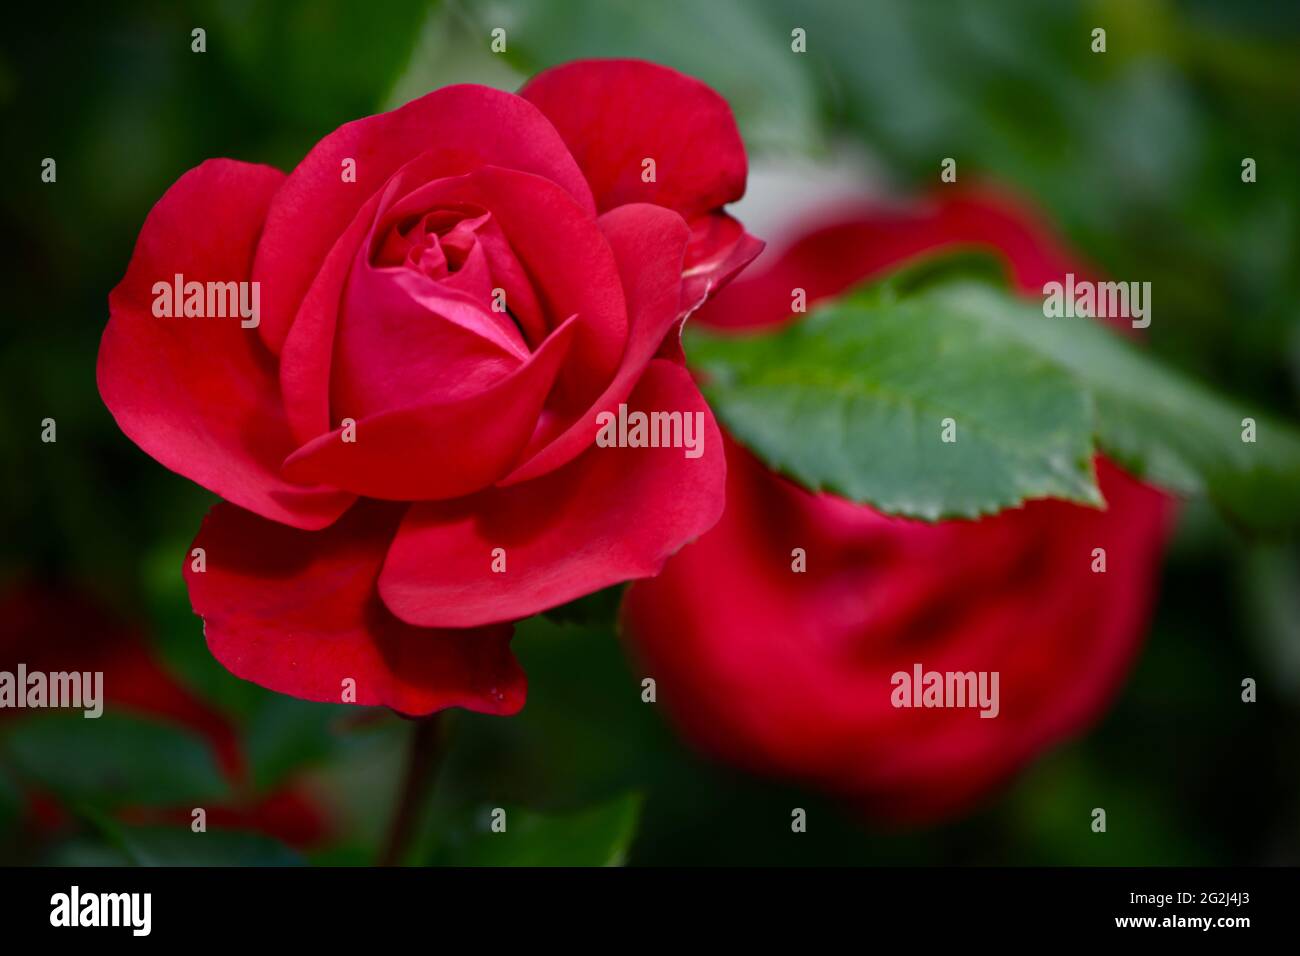 Heilpflanze Rose - rosa - mit herrlicher roter Rosenblüte als Zeichen der Liebe und Freundschaft - Grundstock der europäischen Gartenkultur, Heilpflan Foto de stock